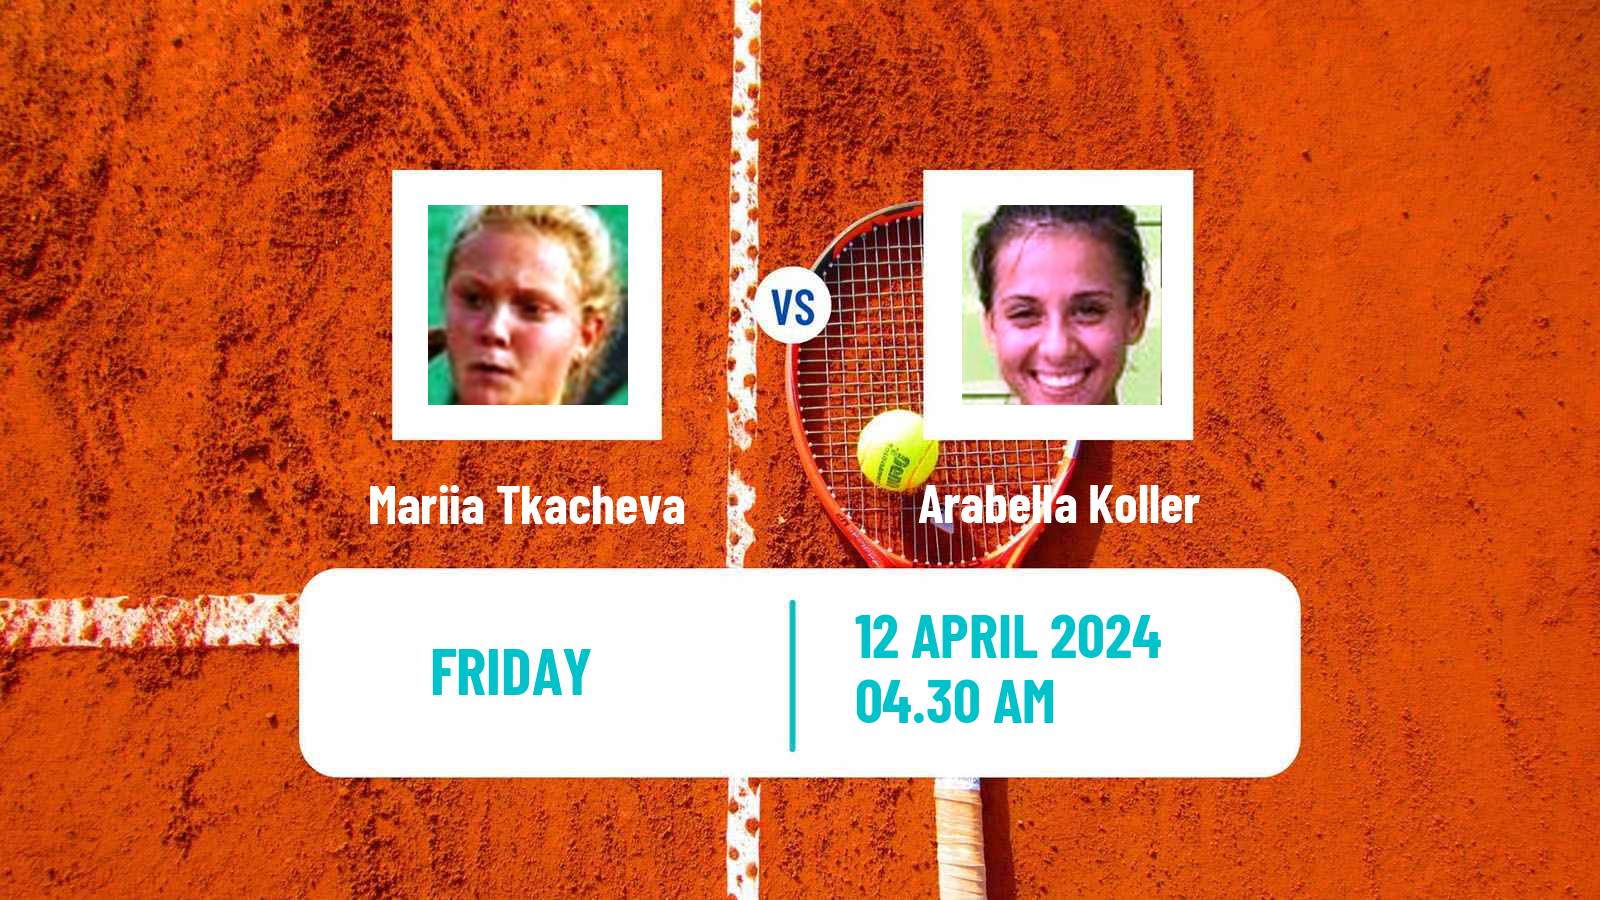 Tennis ITF W15 Monastir 13 Women Mariia Tkacheva - Arabella Koller